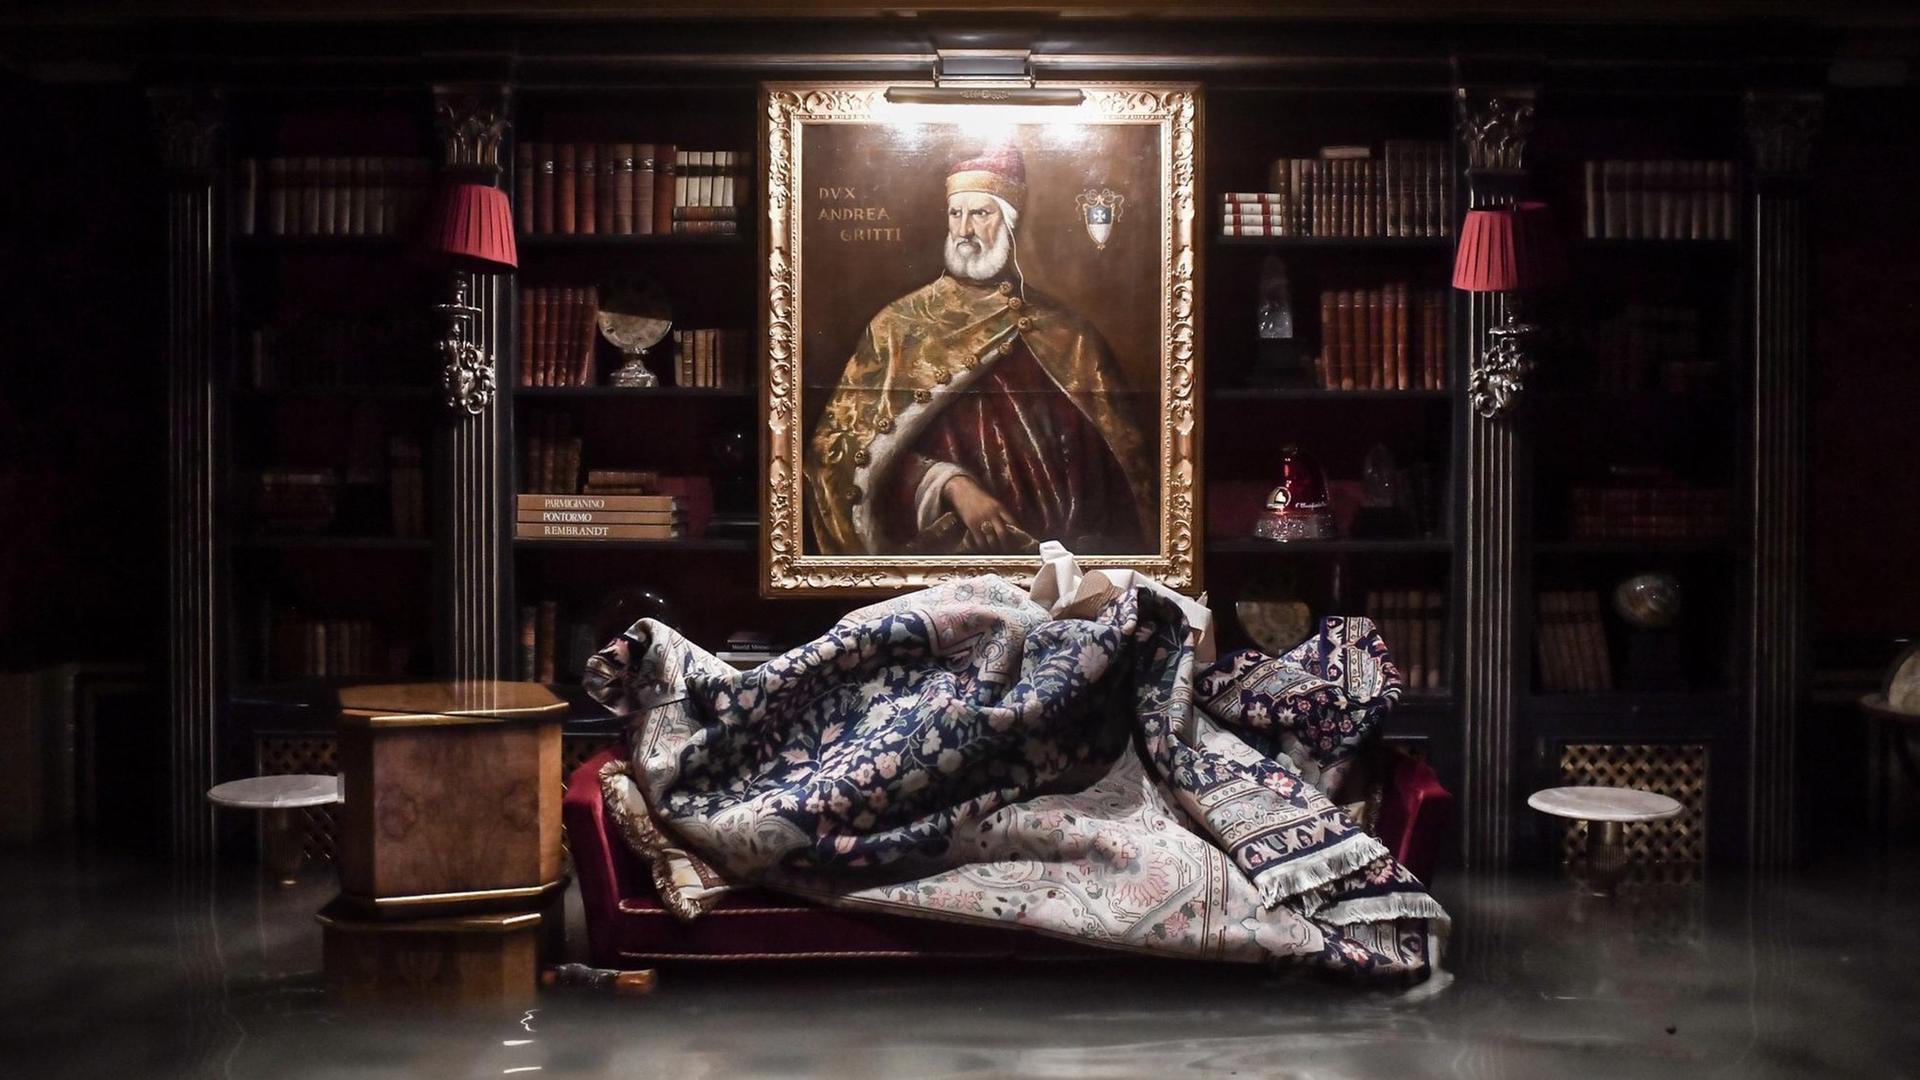 Das Foto zeigt einen Raum im überfluteten Gritti-Palast während des außergewöhnlichen Hochwasserstandes am 12. November 2019 in Venedig. An der Wand hängt ein Gemälde zwischen einer sehr alten Bücherwand. Im Vordergrund im Wasser stehend steht ein Sofa auf dem der Teppich abgelegt wurde.